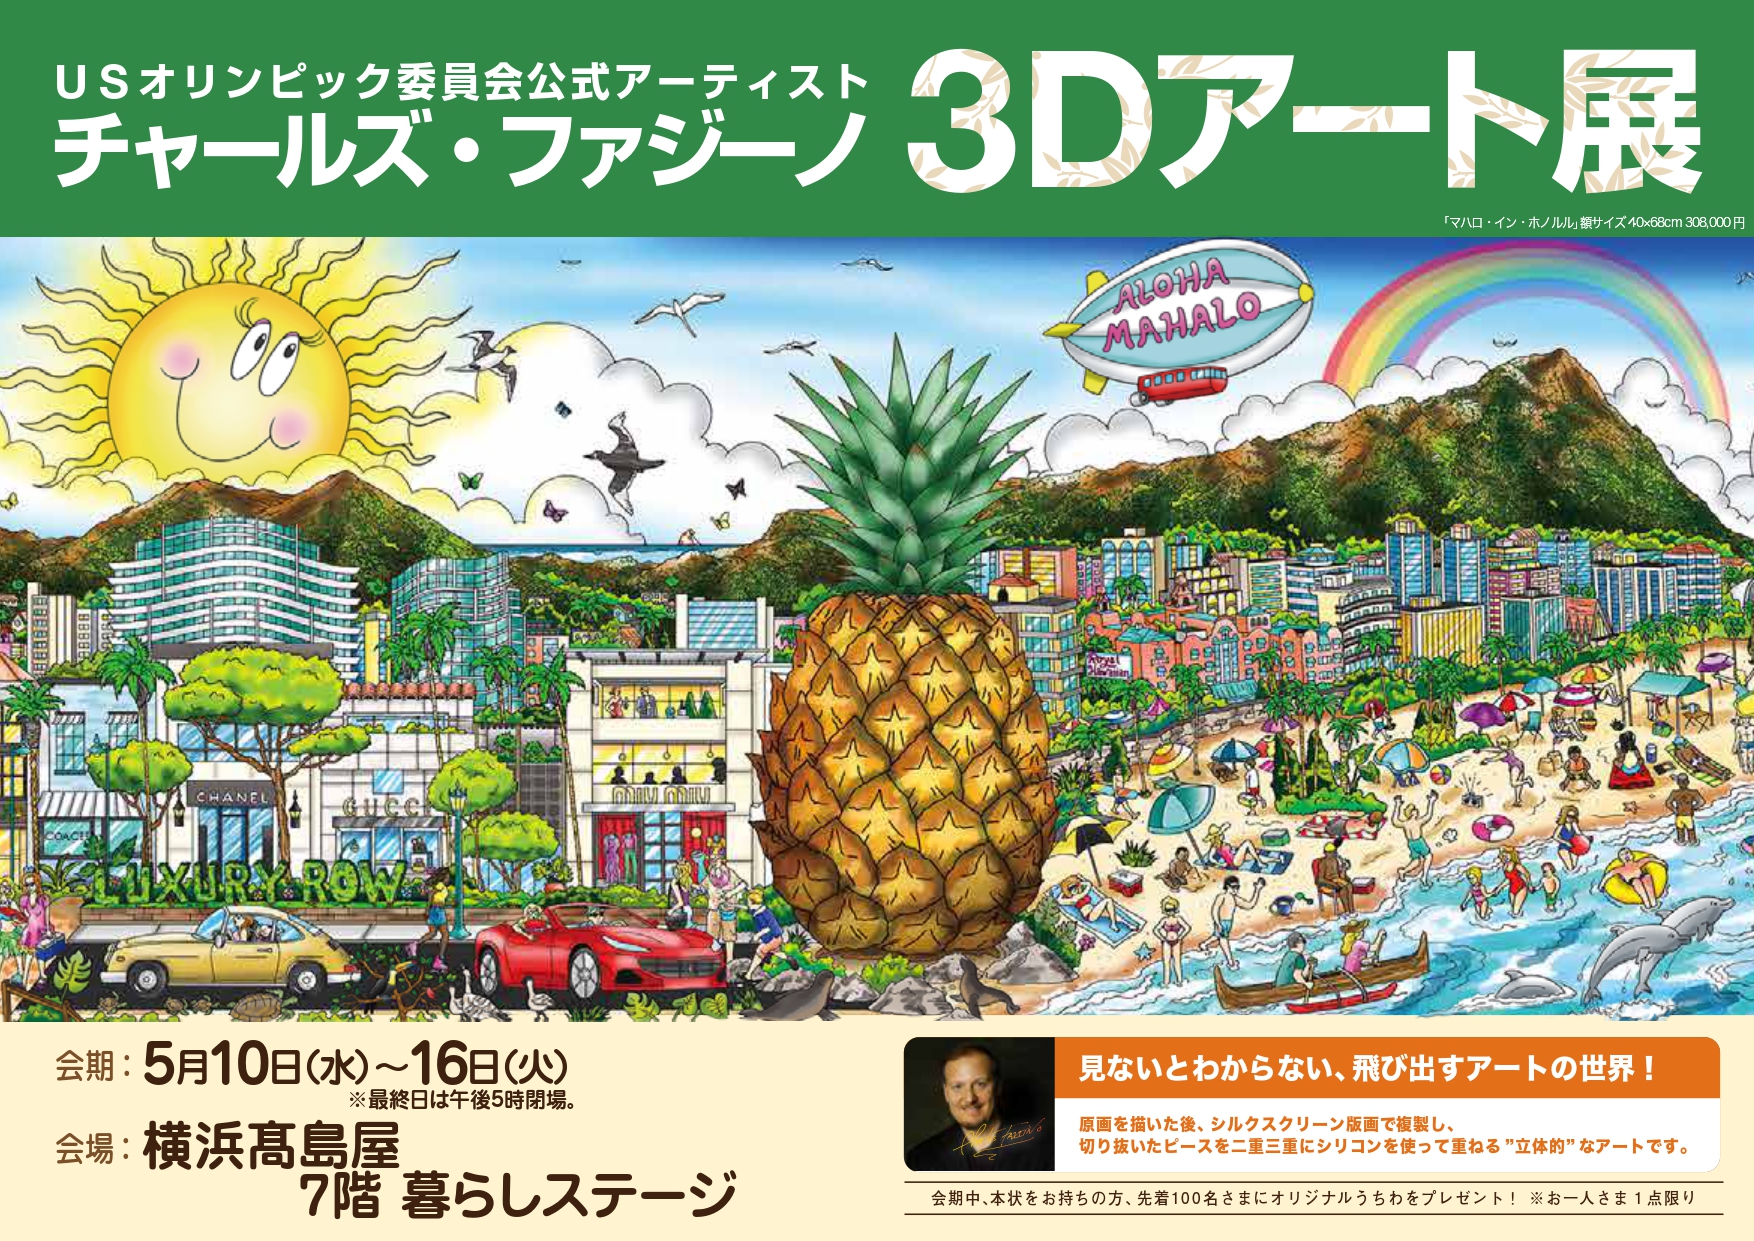 チャールズ・ファジーノ 3Dアート展」横浜高島屋で開催のお知らせ